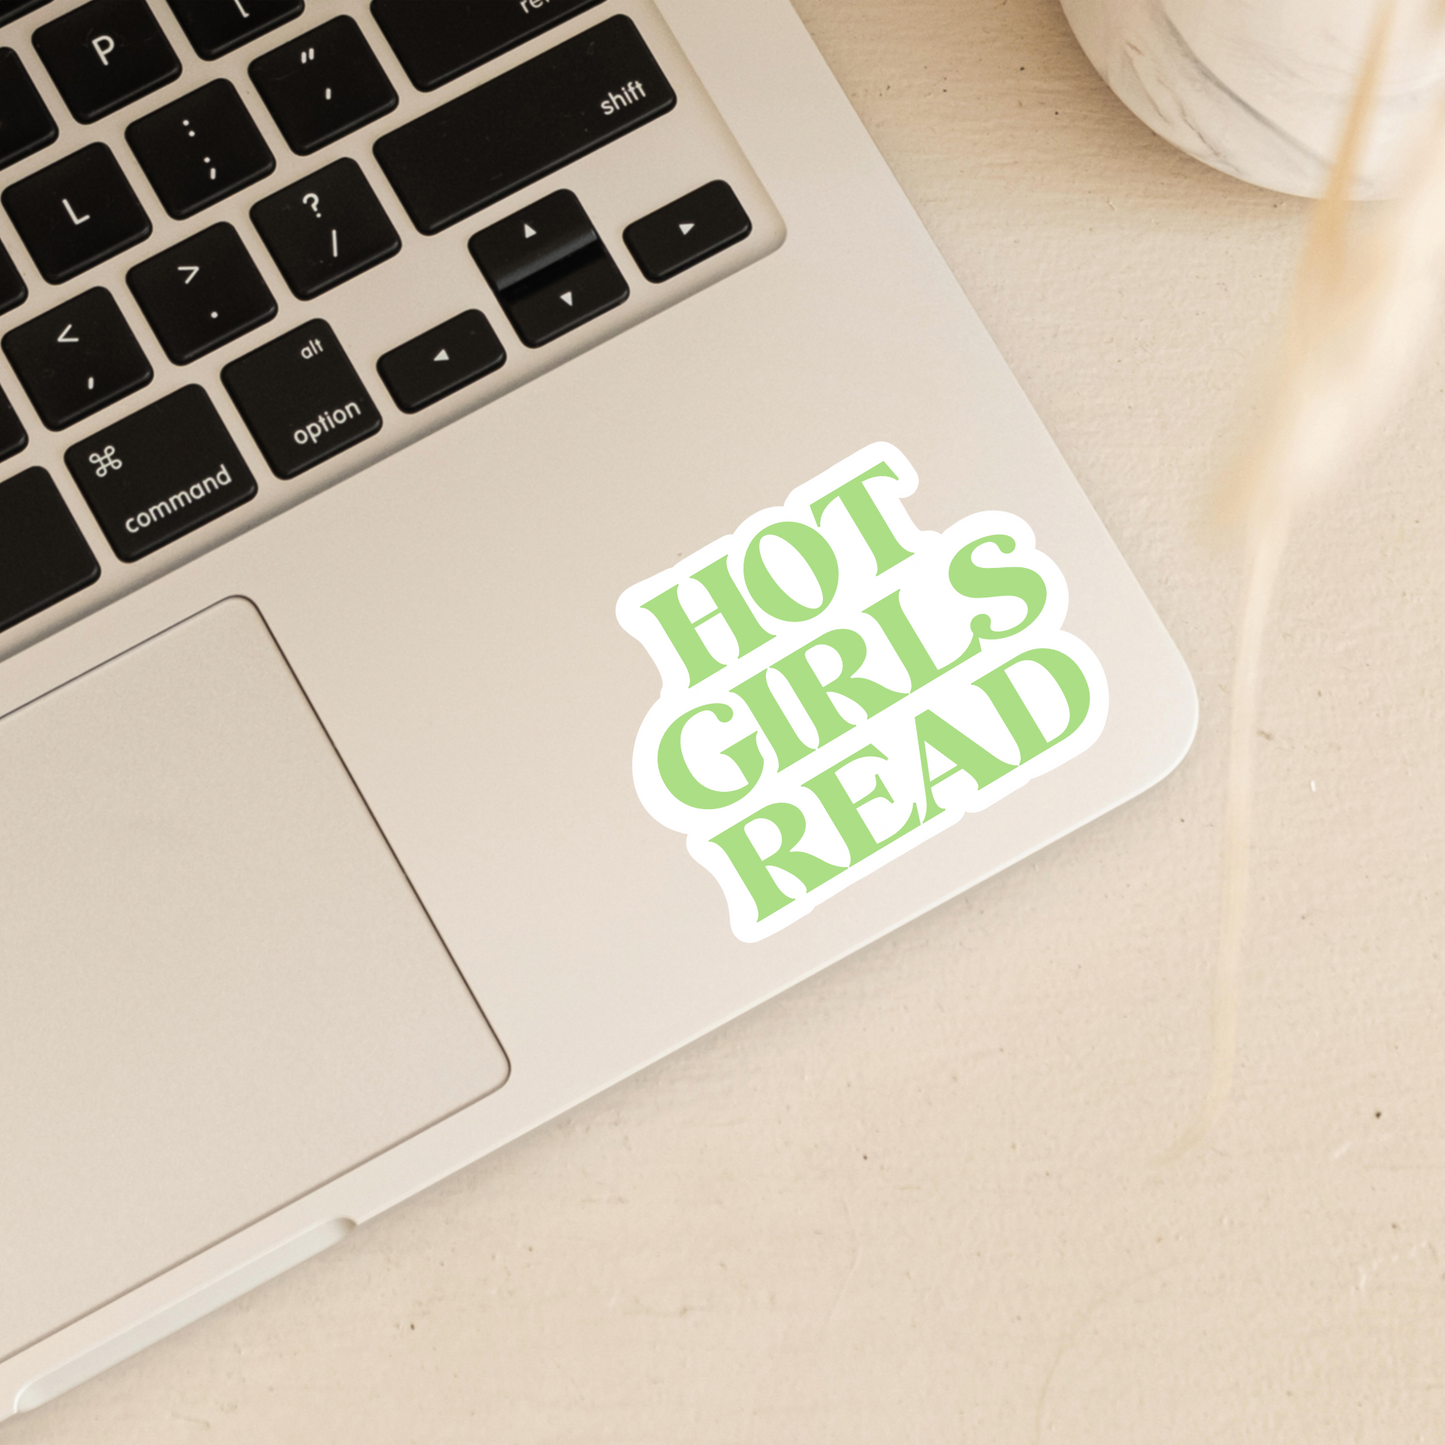 Hot Girls Read | Hot Girls Read